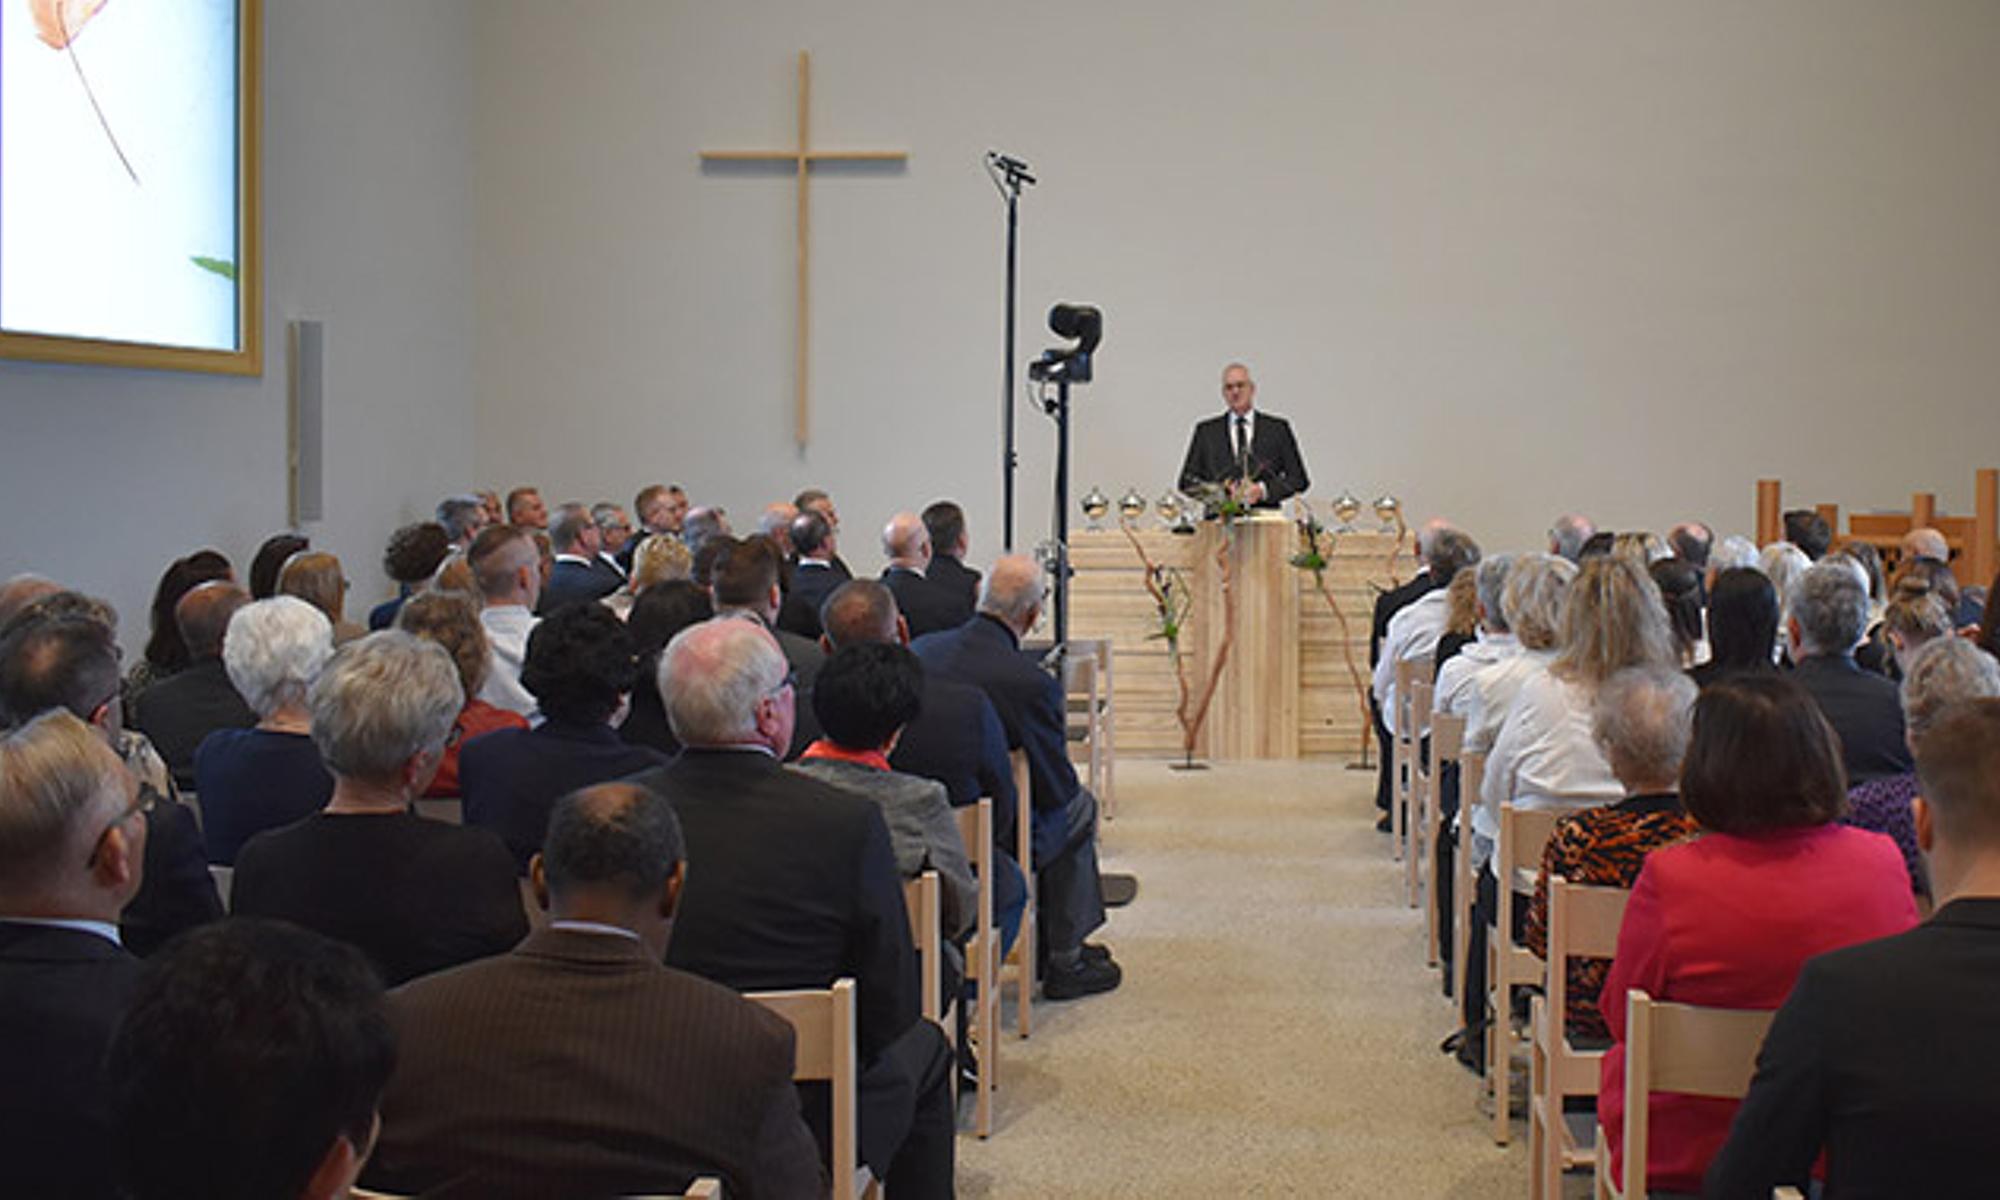 Bezirksapostel Michael Ehrich weiht das neue Kirchengebäude in Pfalzgrafenweiler